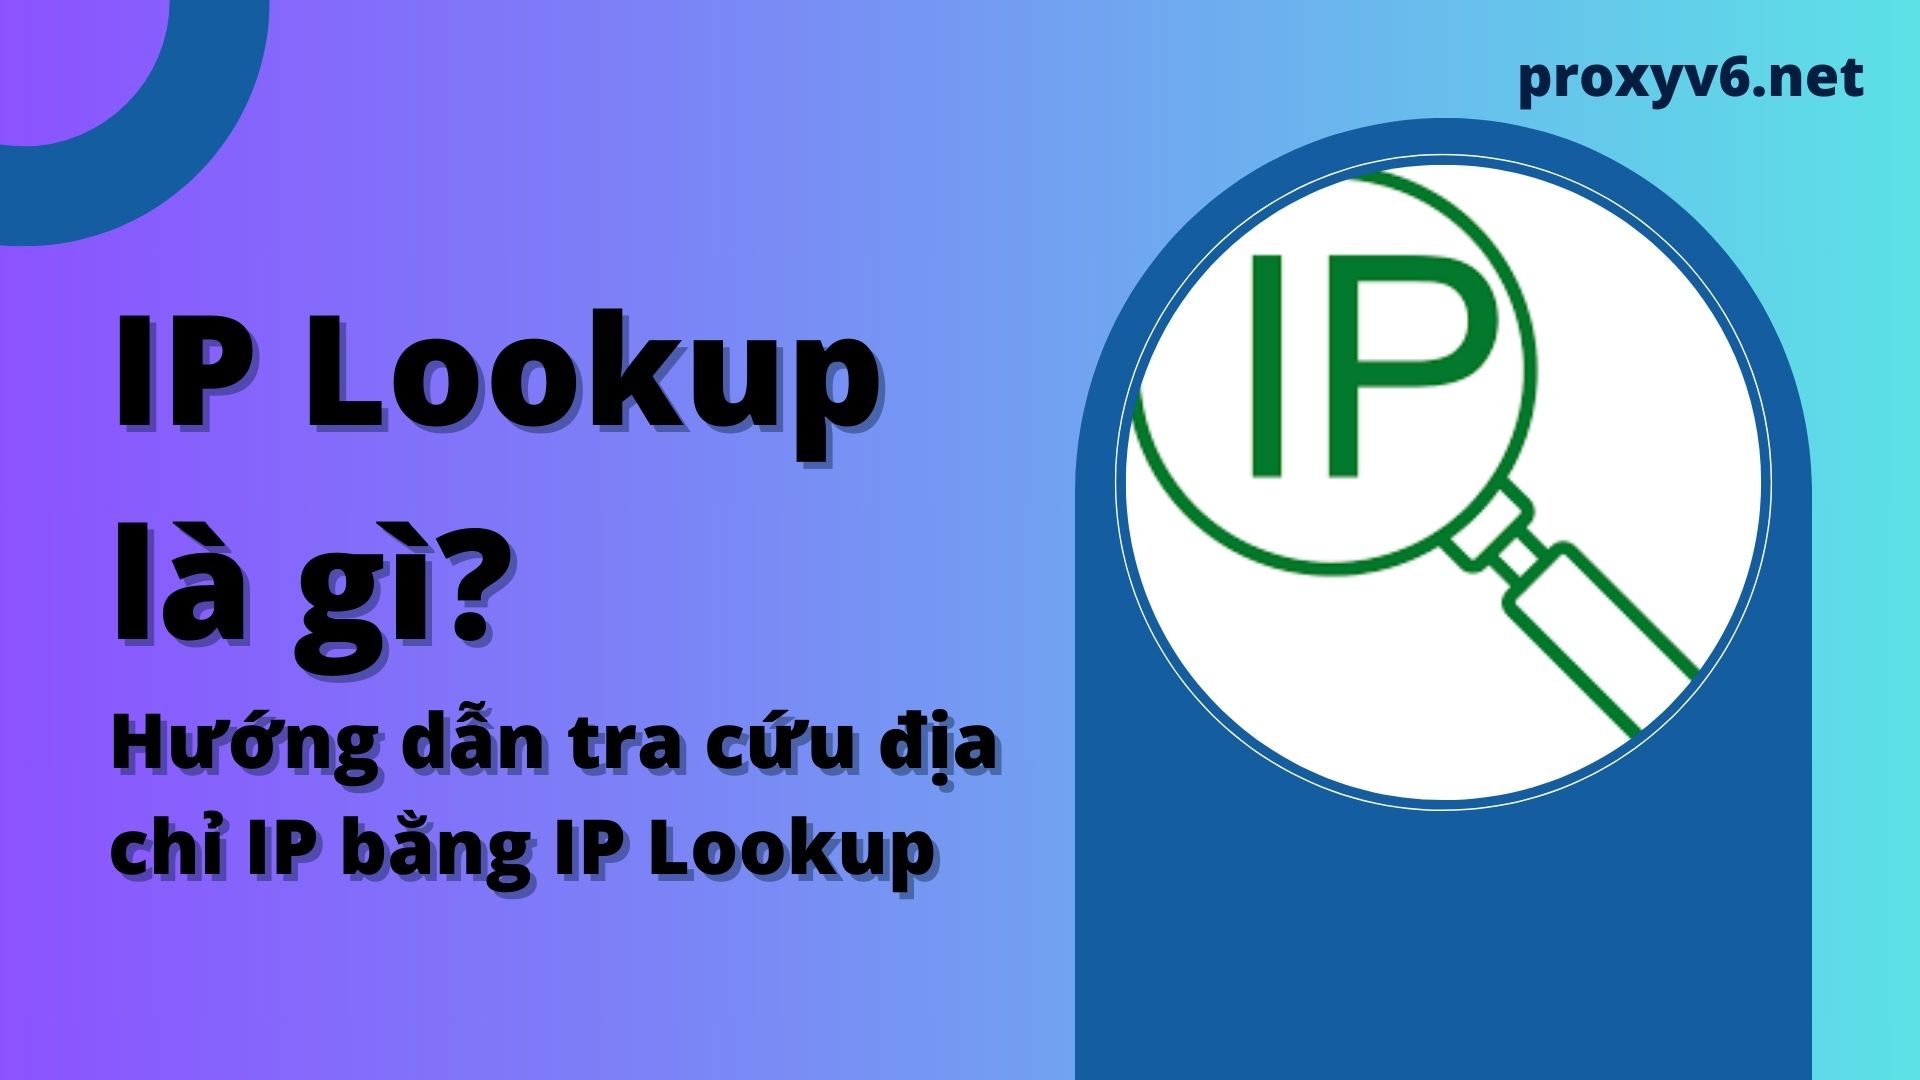 IP Lookup là gì? Hướng dẫn tra cứu địa chỉ IP bằng IP Lookup